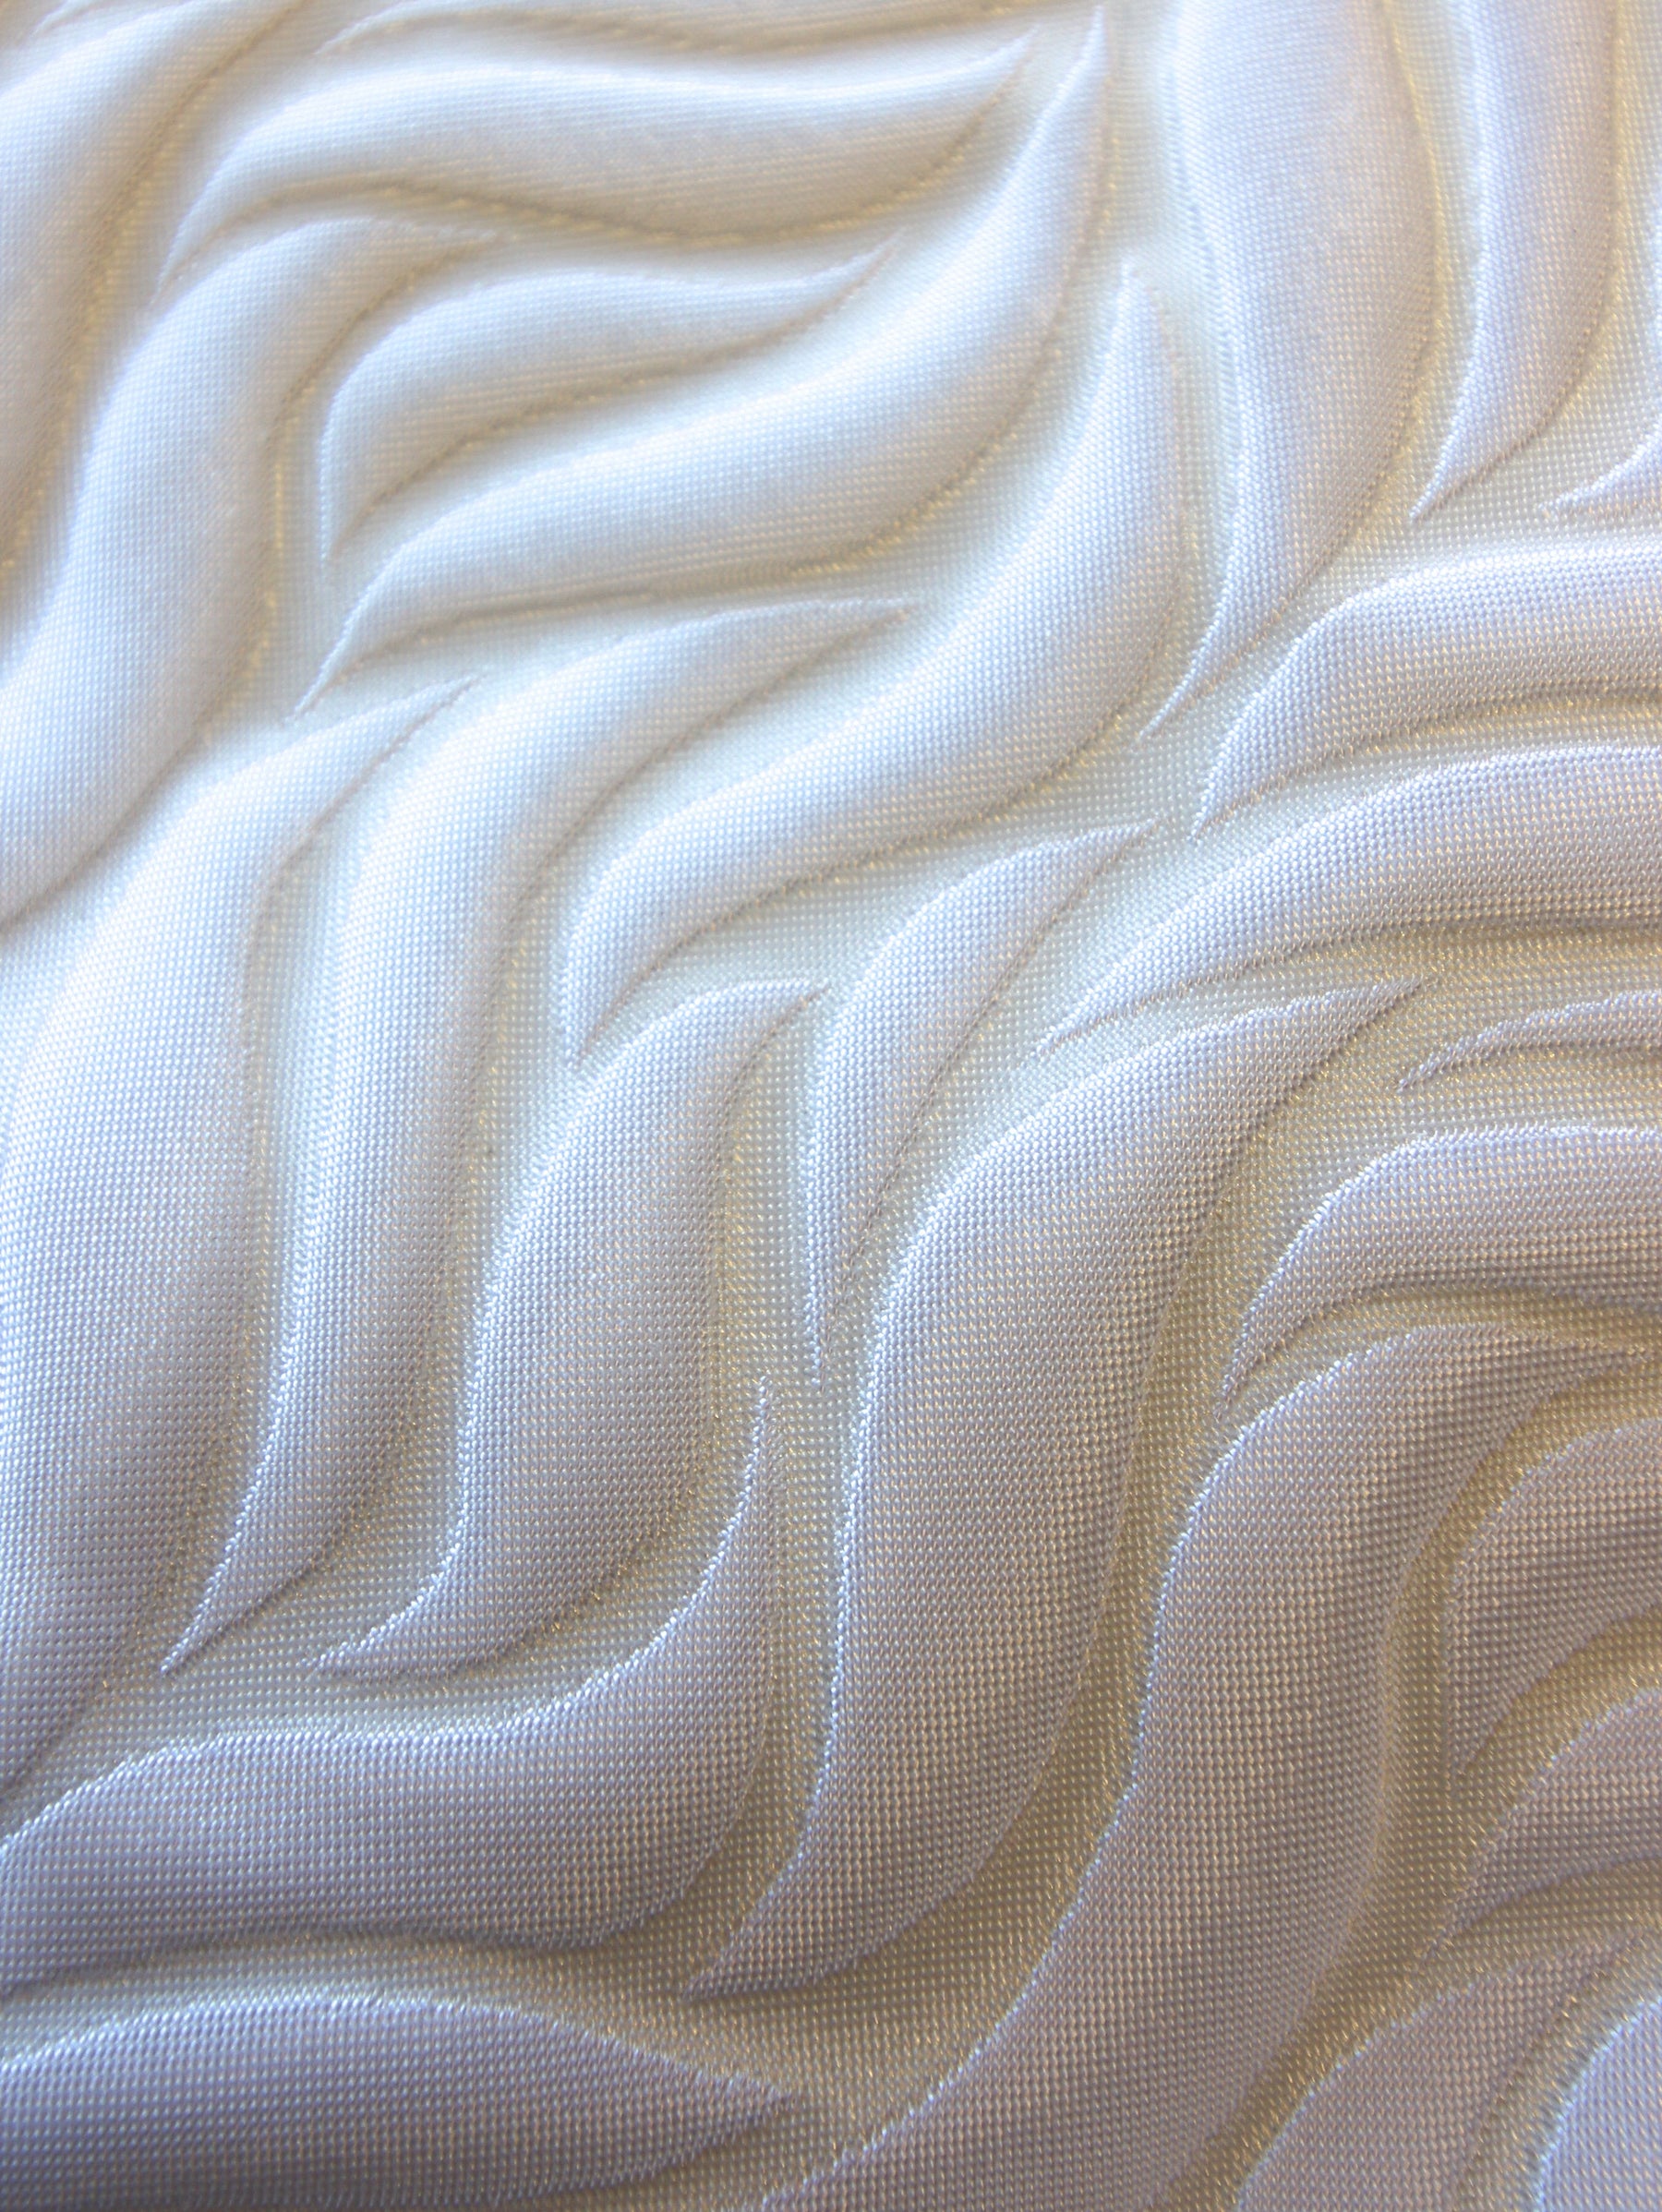 White Waistcoat Fabric - Madrid